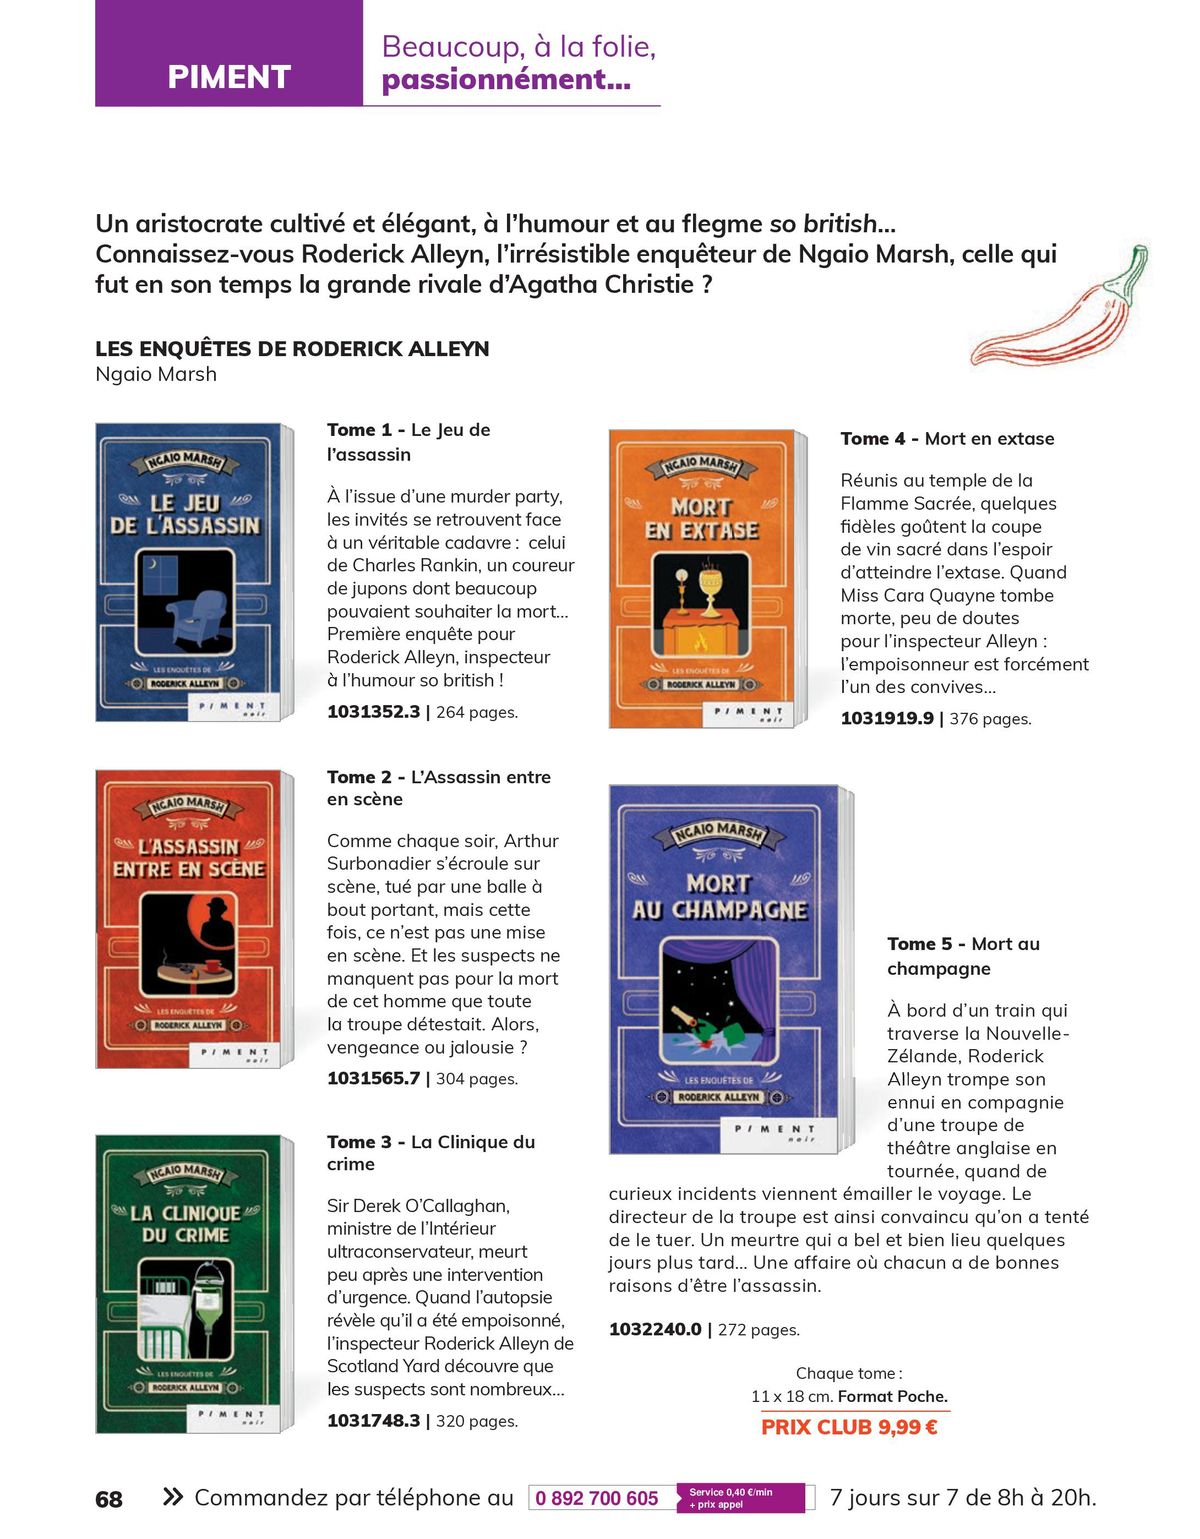 Catalogue Le Mag (Lire, feuilleter, dévorer... Vive la rentrée!), page 00068